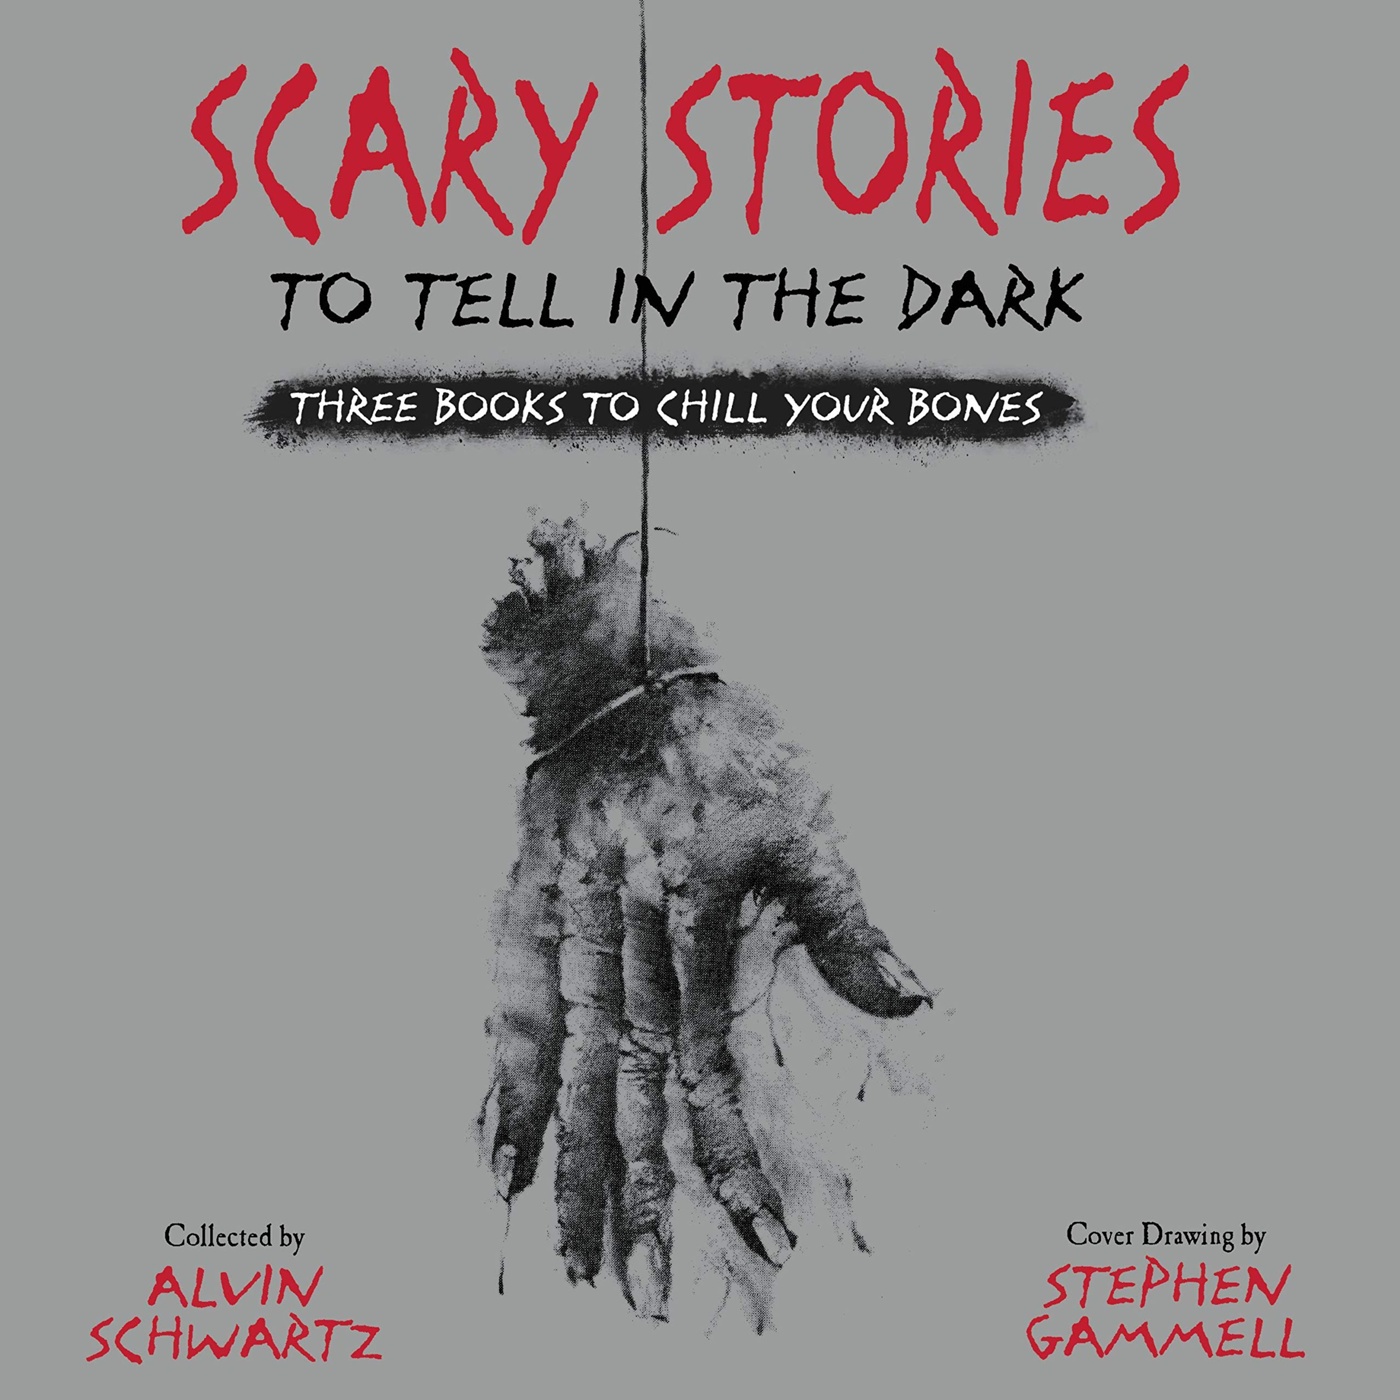 Аудиокниги страшные книги. Scary stories to tell in the Dark книга. Scary stories to tell in the Dark Series by Alvin Schwartz. Scary stories 3 Alvin Schwartz Audio.